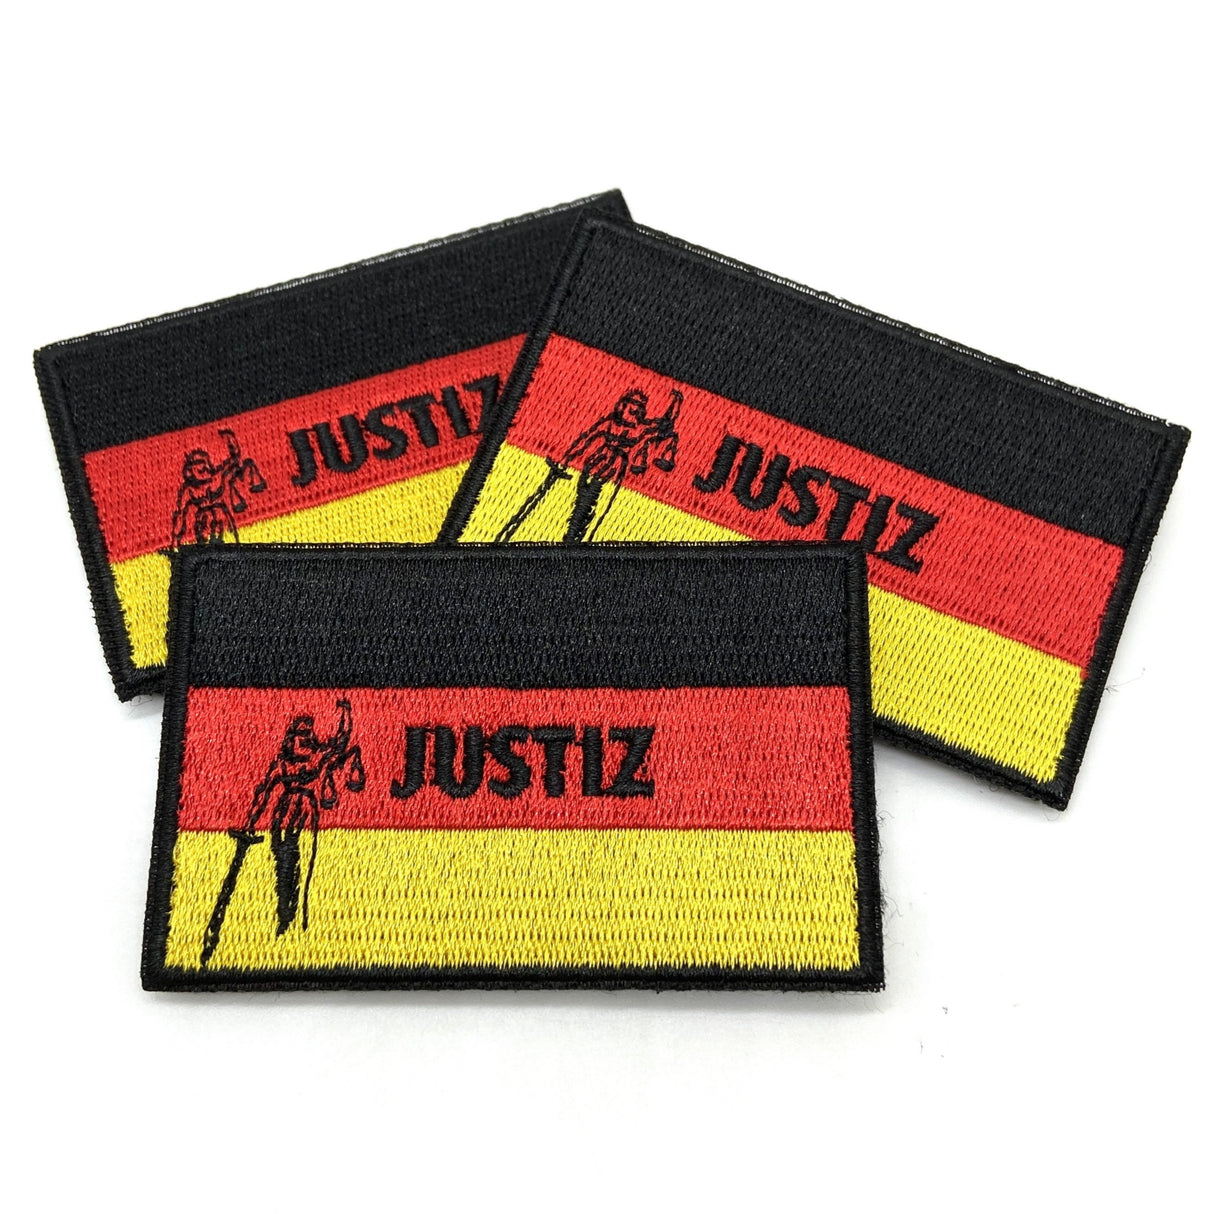 Justiz Deutschland Textil Patches